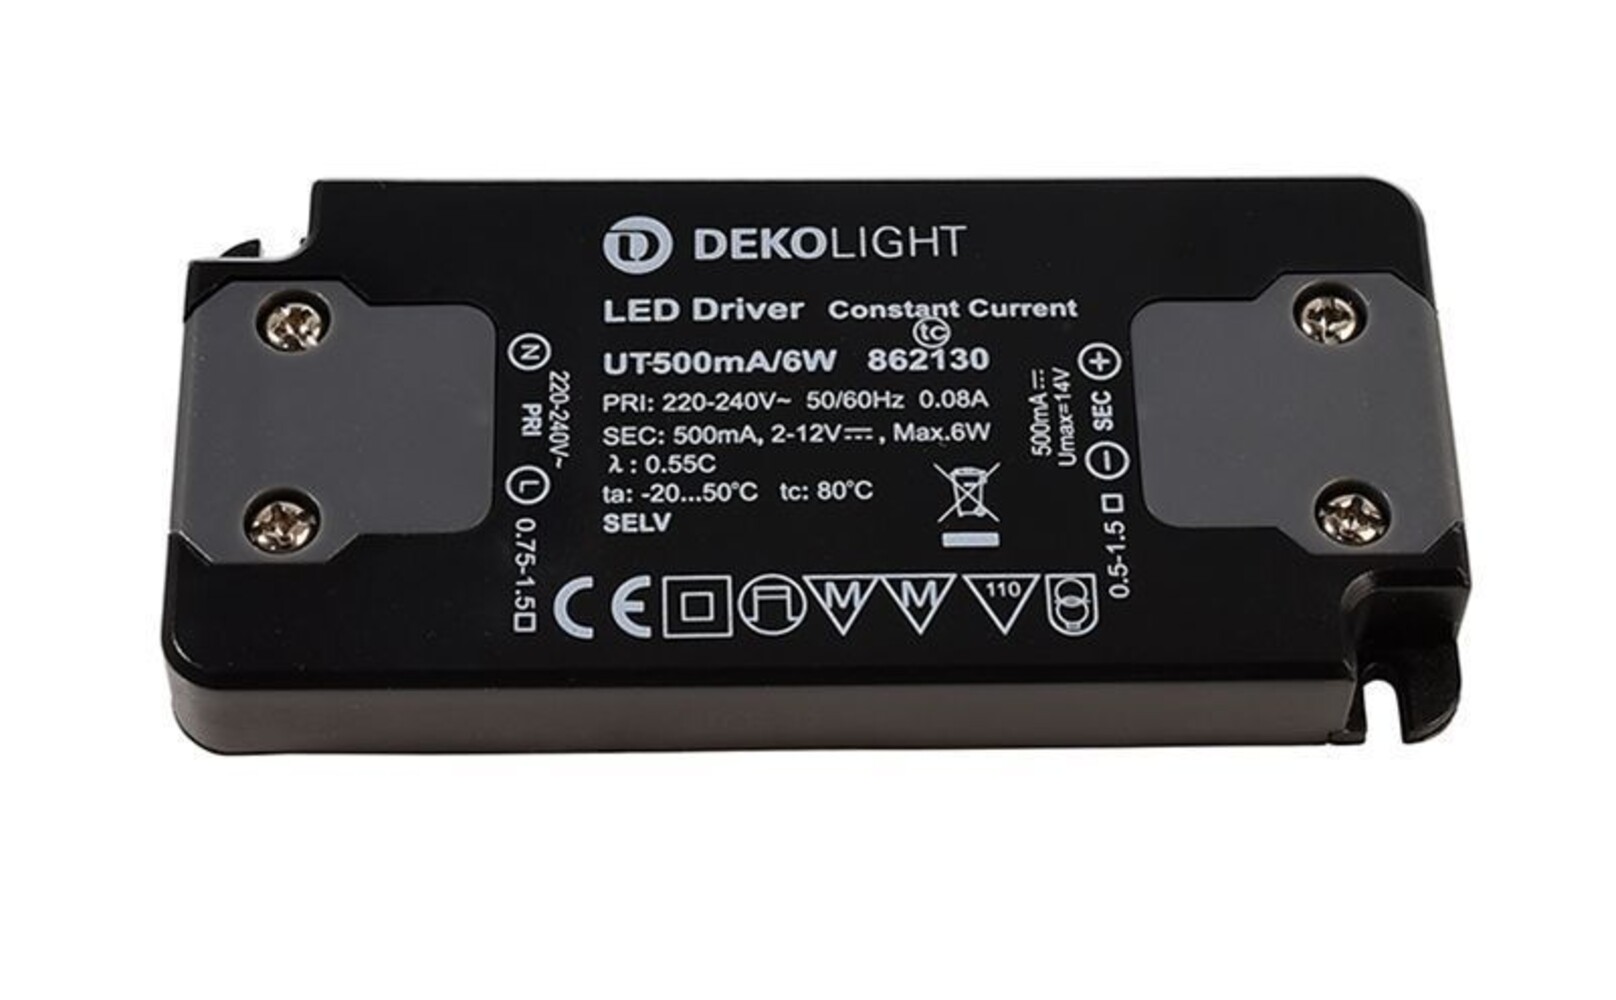 Hochwertiges LED Netzteil von Deko-Light in schlanker Flat-Ausführung für stromkonstante Anwendung, 6W Leistung, 500mA